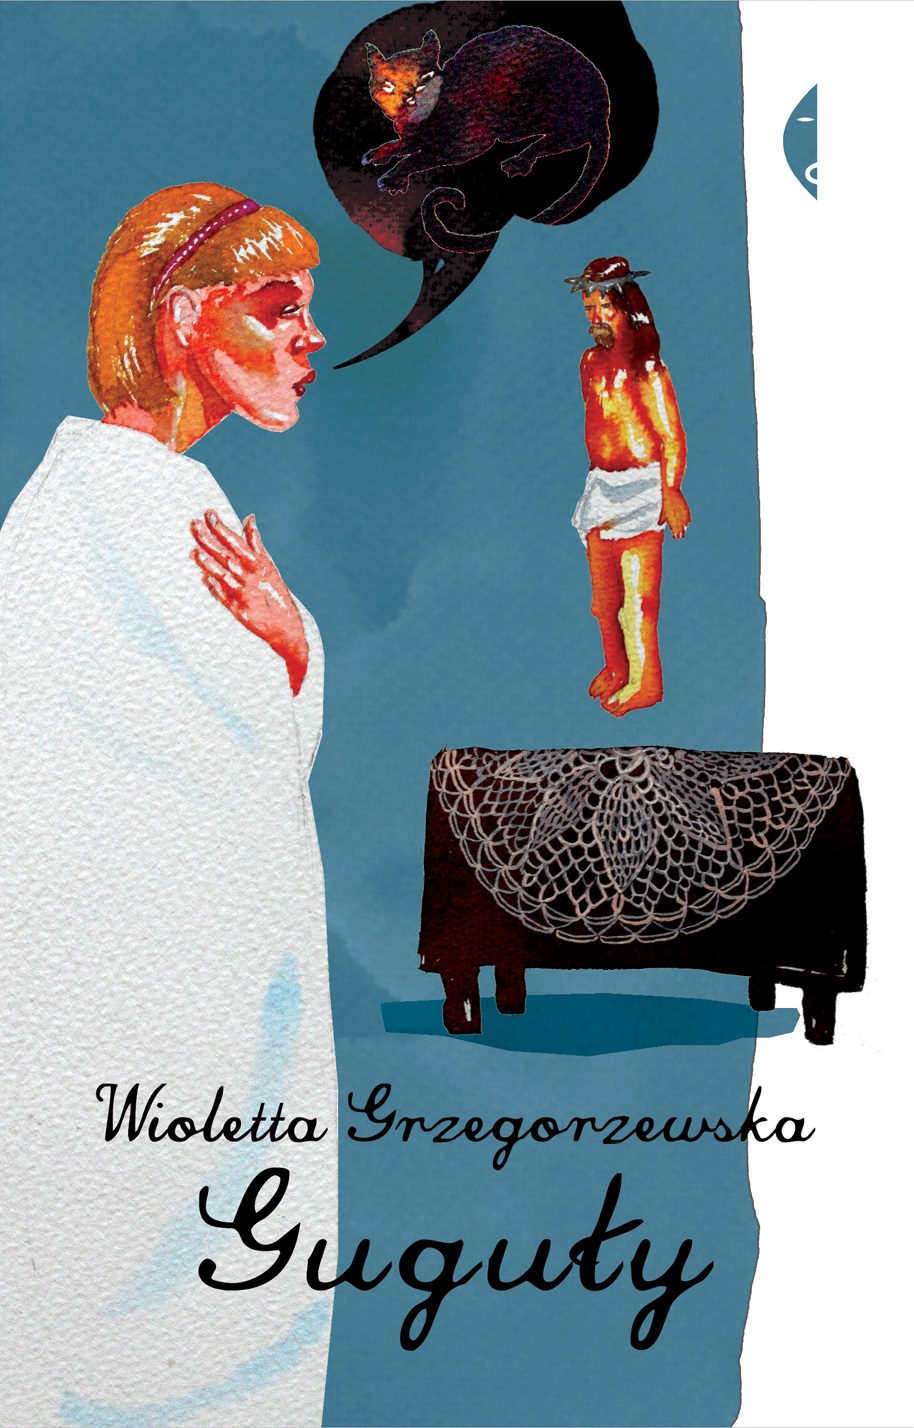 Guguły, Wioletta Grzegorzewska